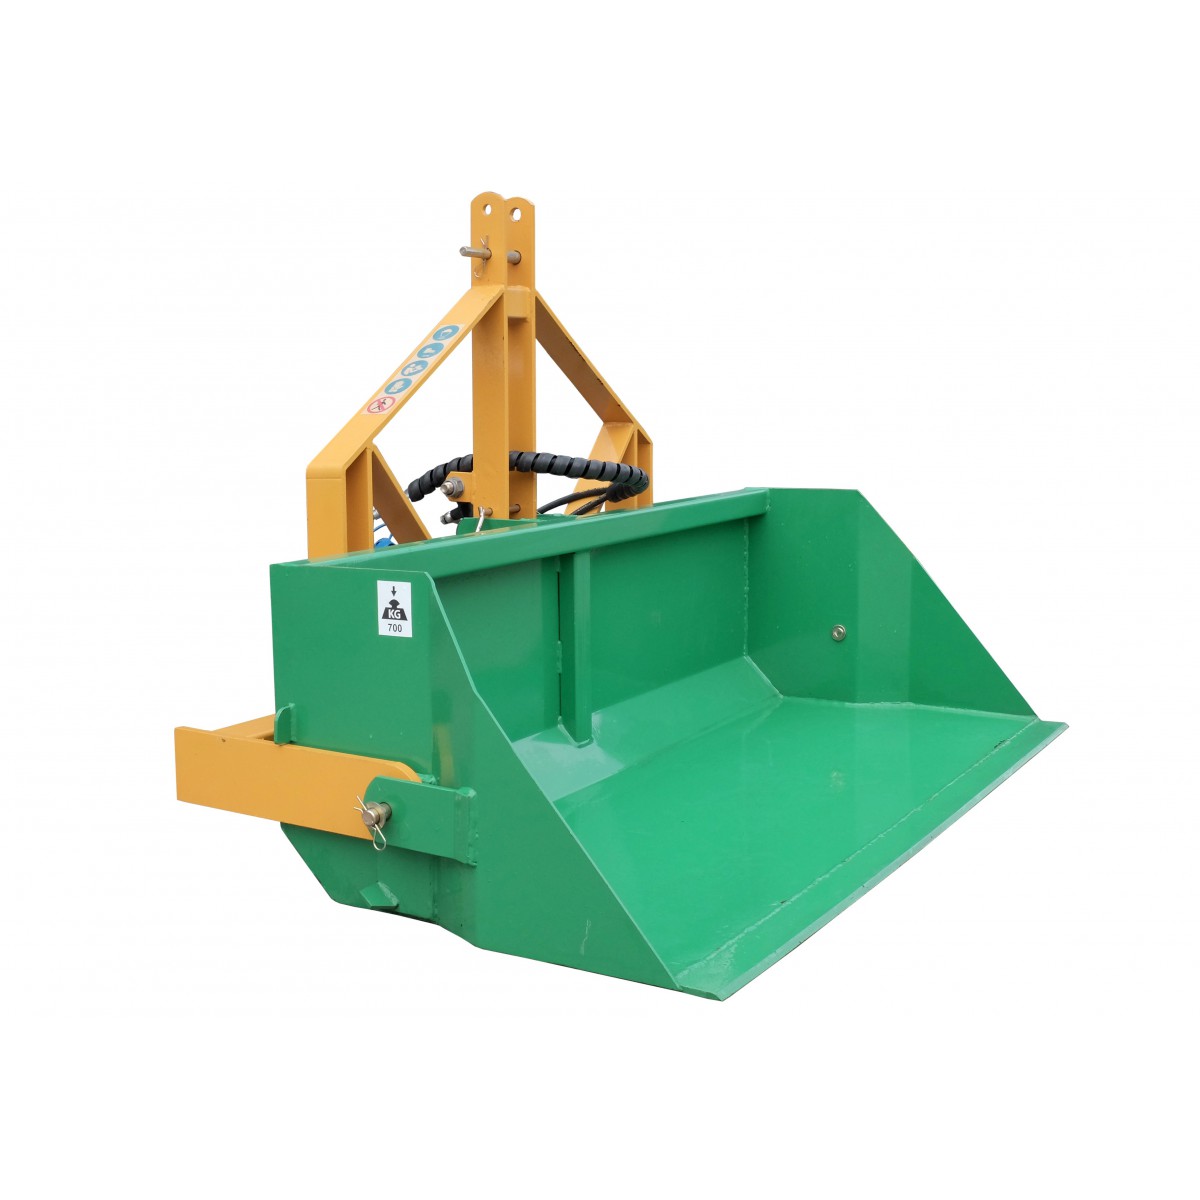 160 cm transport box with TRX hydraulic tipper